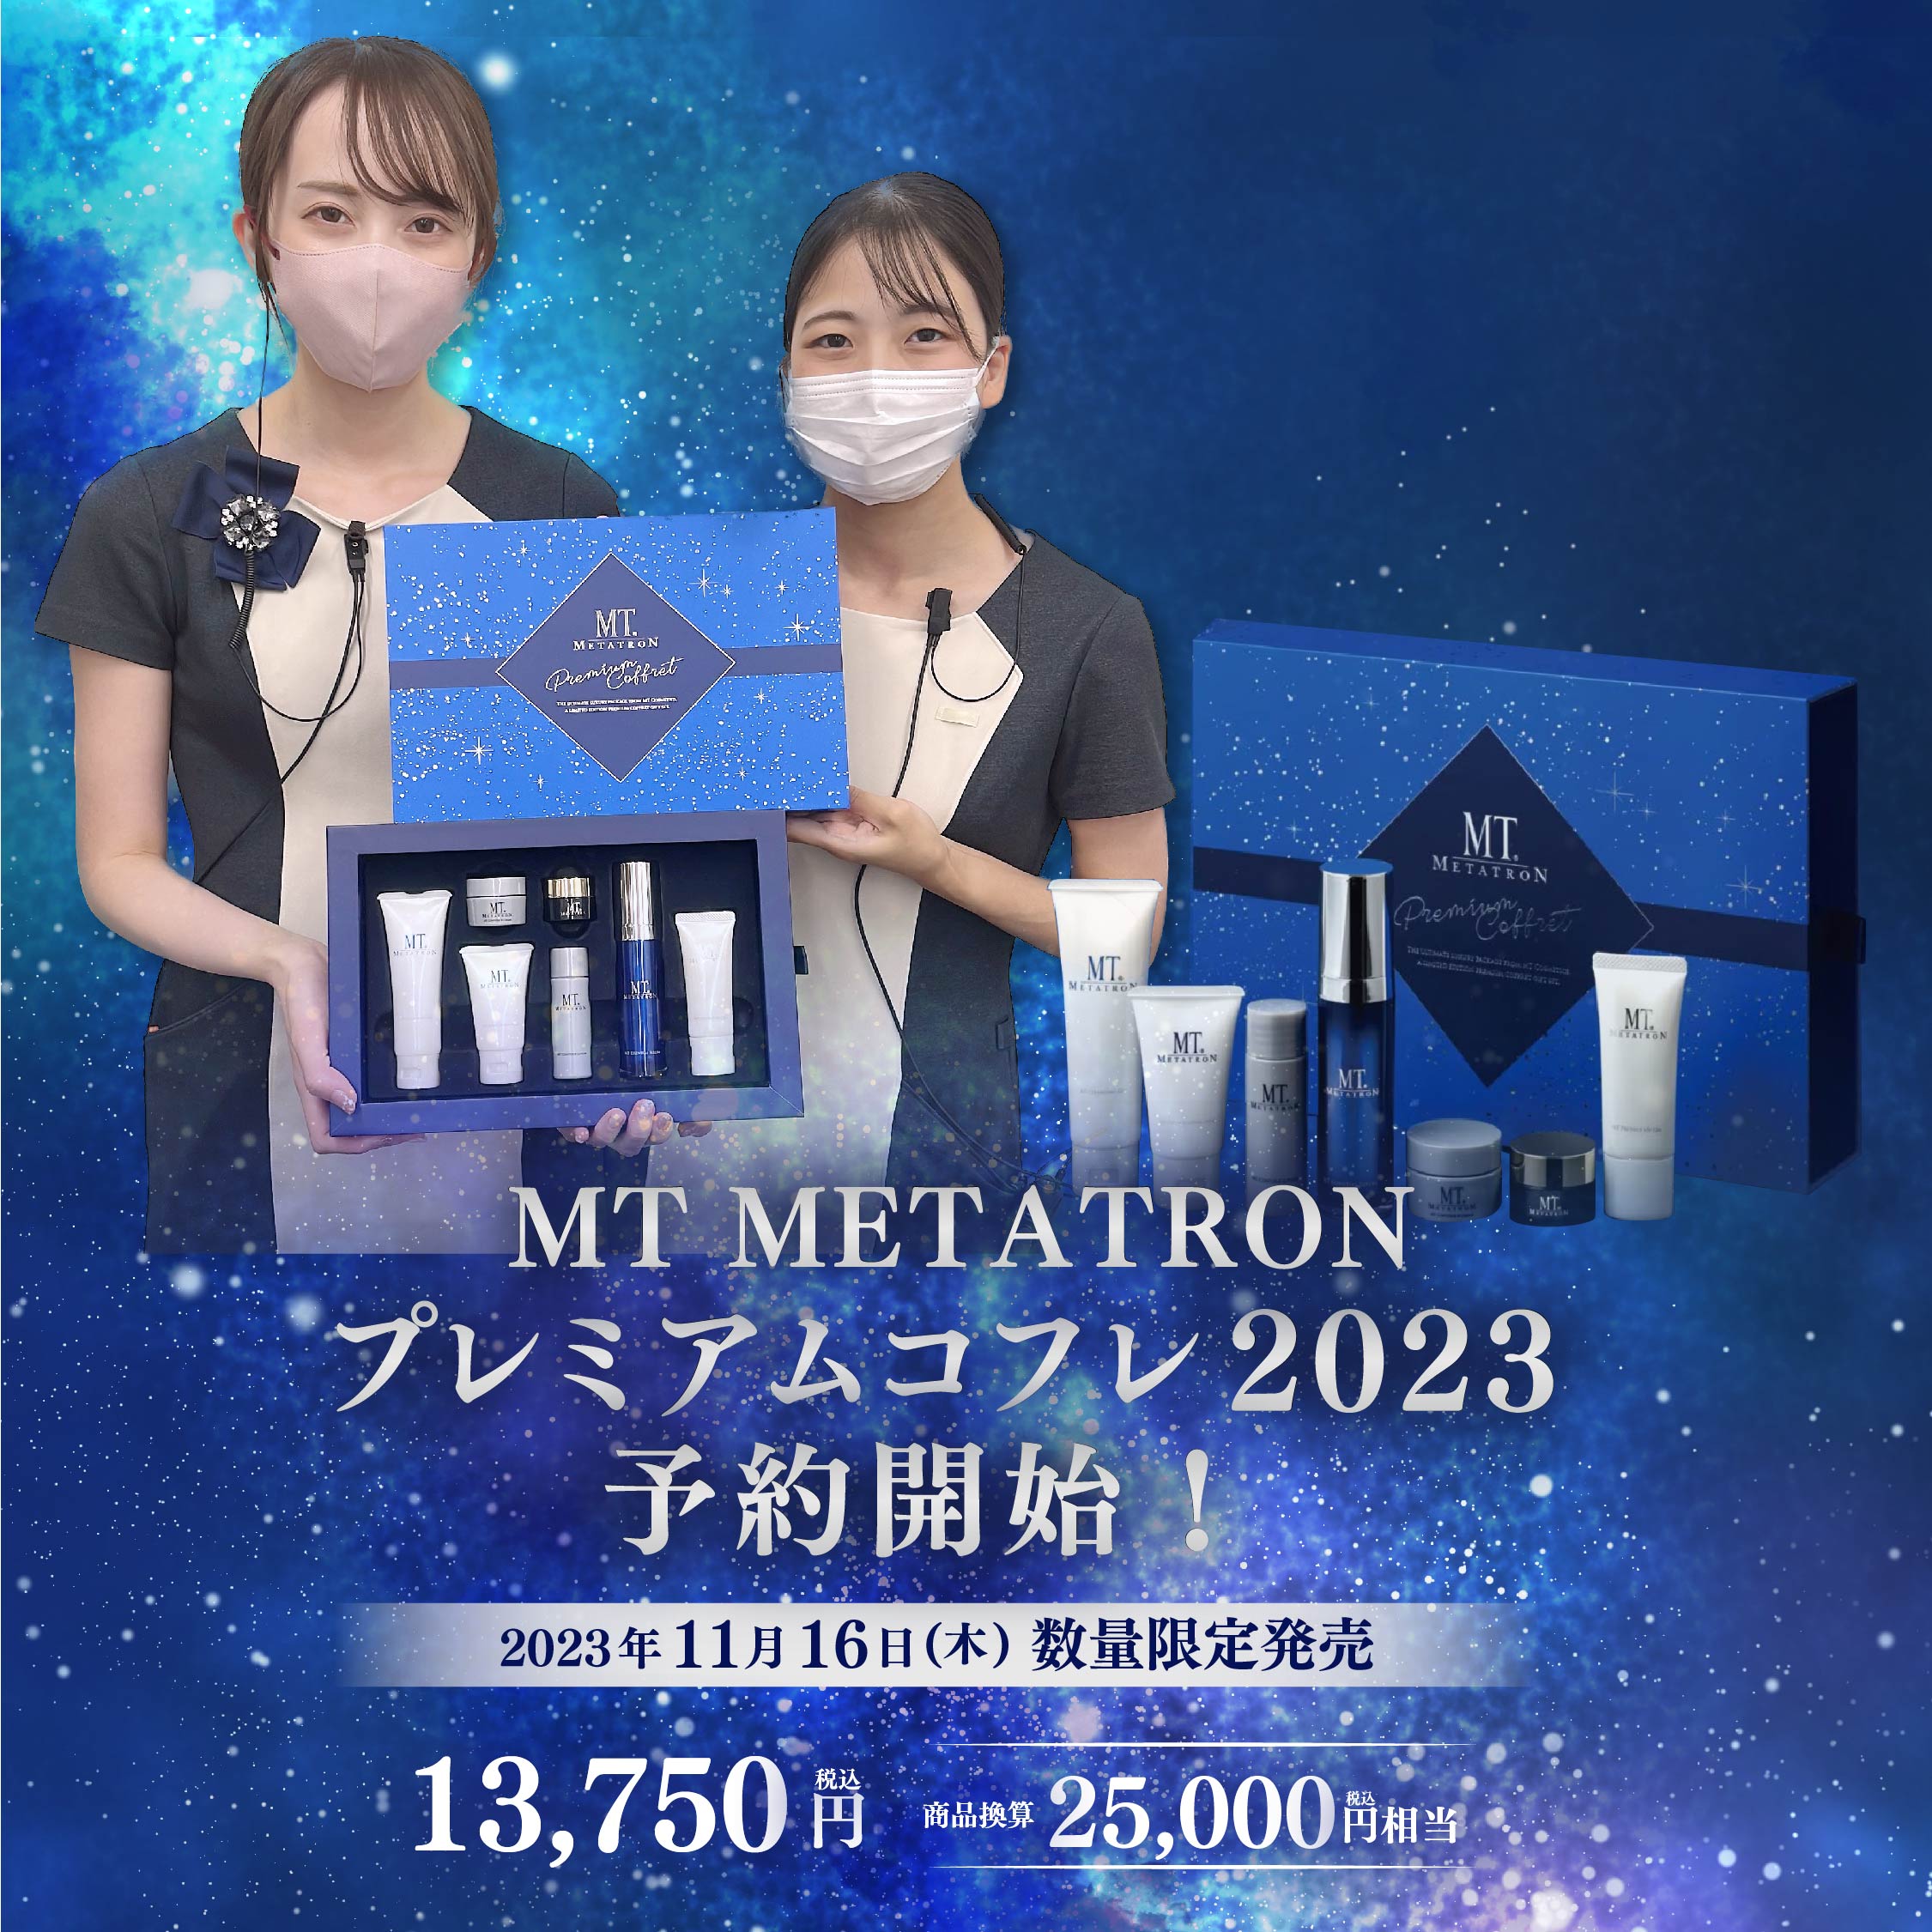 【買取公式】MTメタトロン プレミアムクリスマスコフレ2023 パック・フェイスマスク